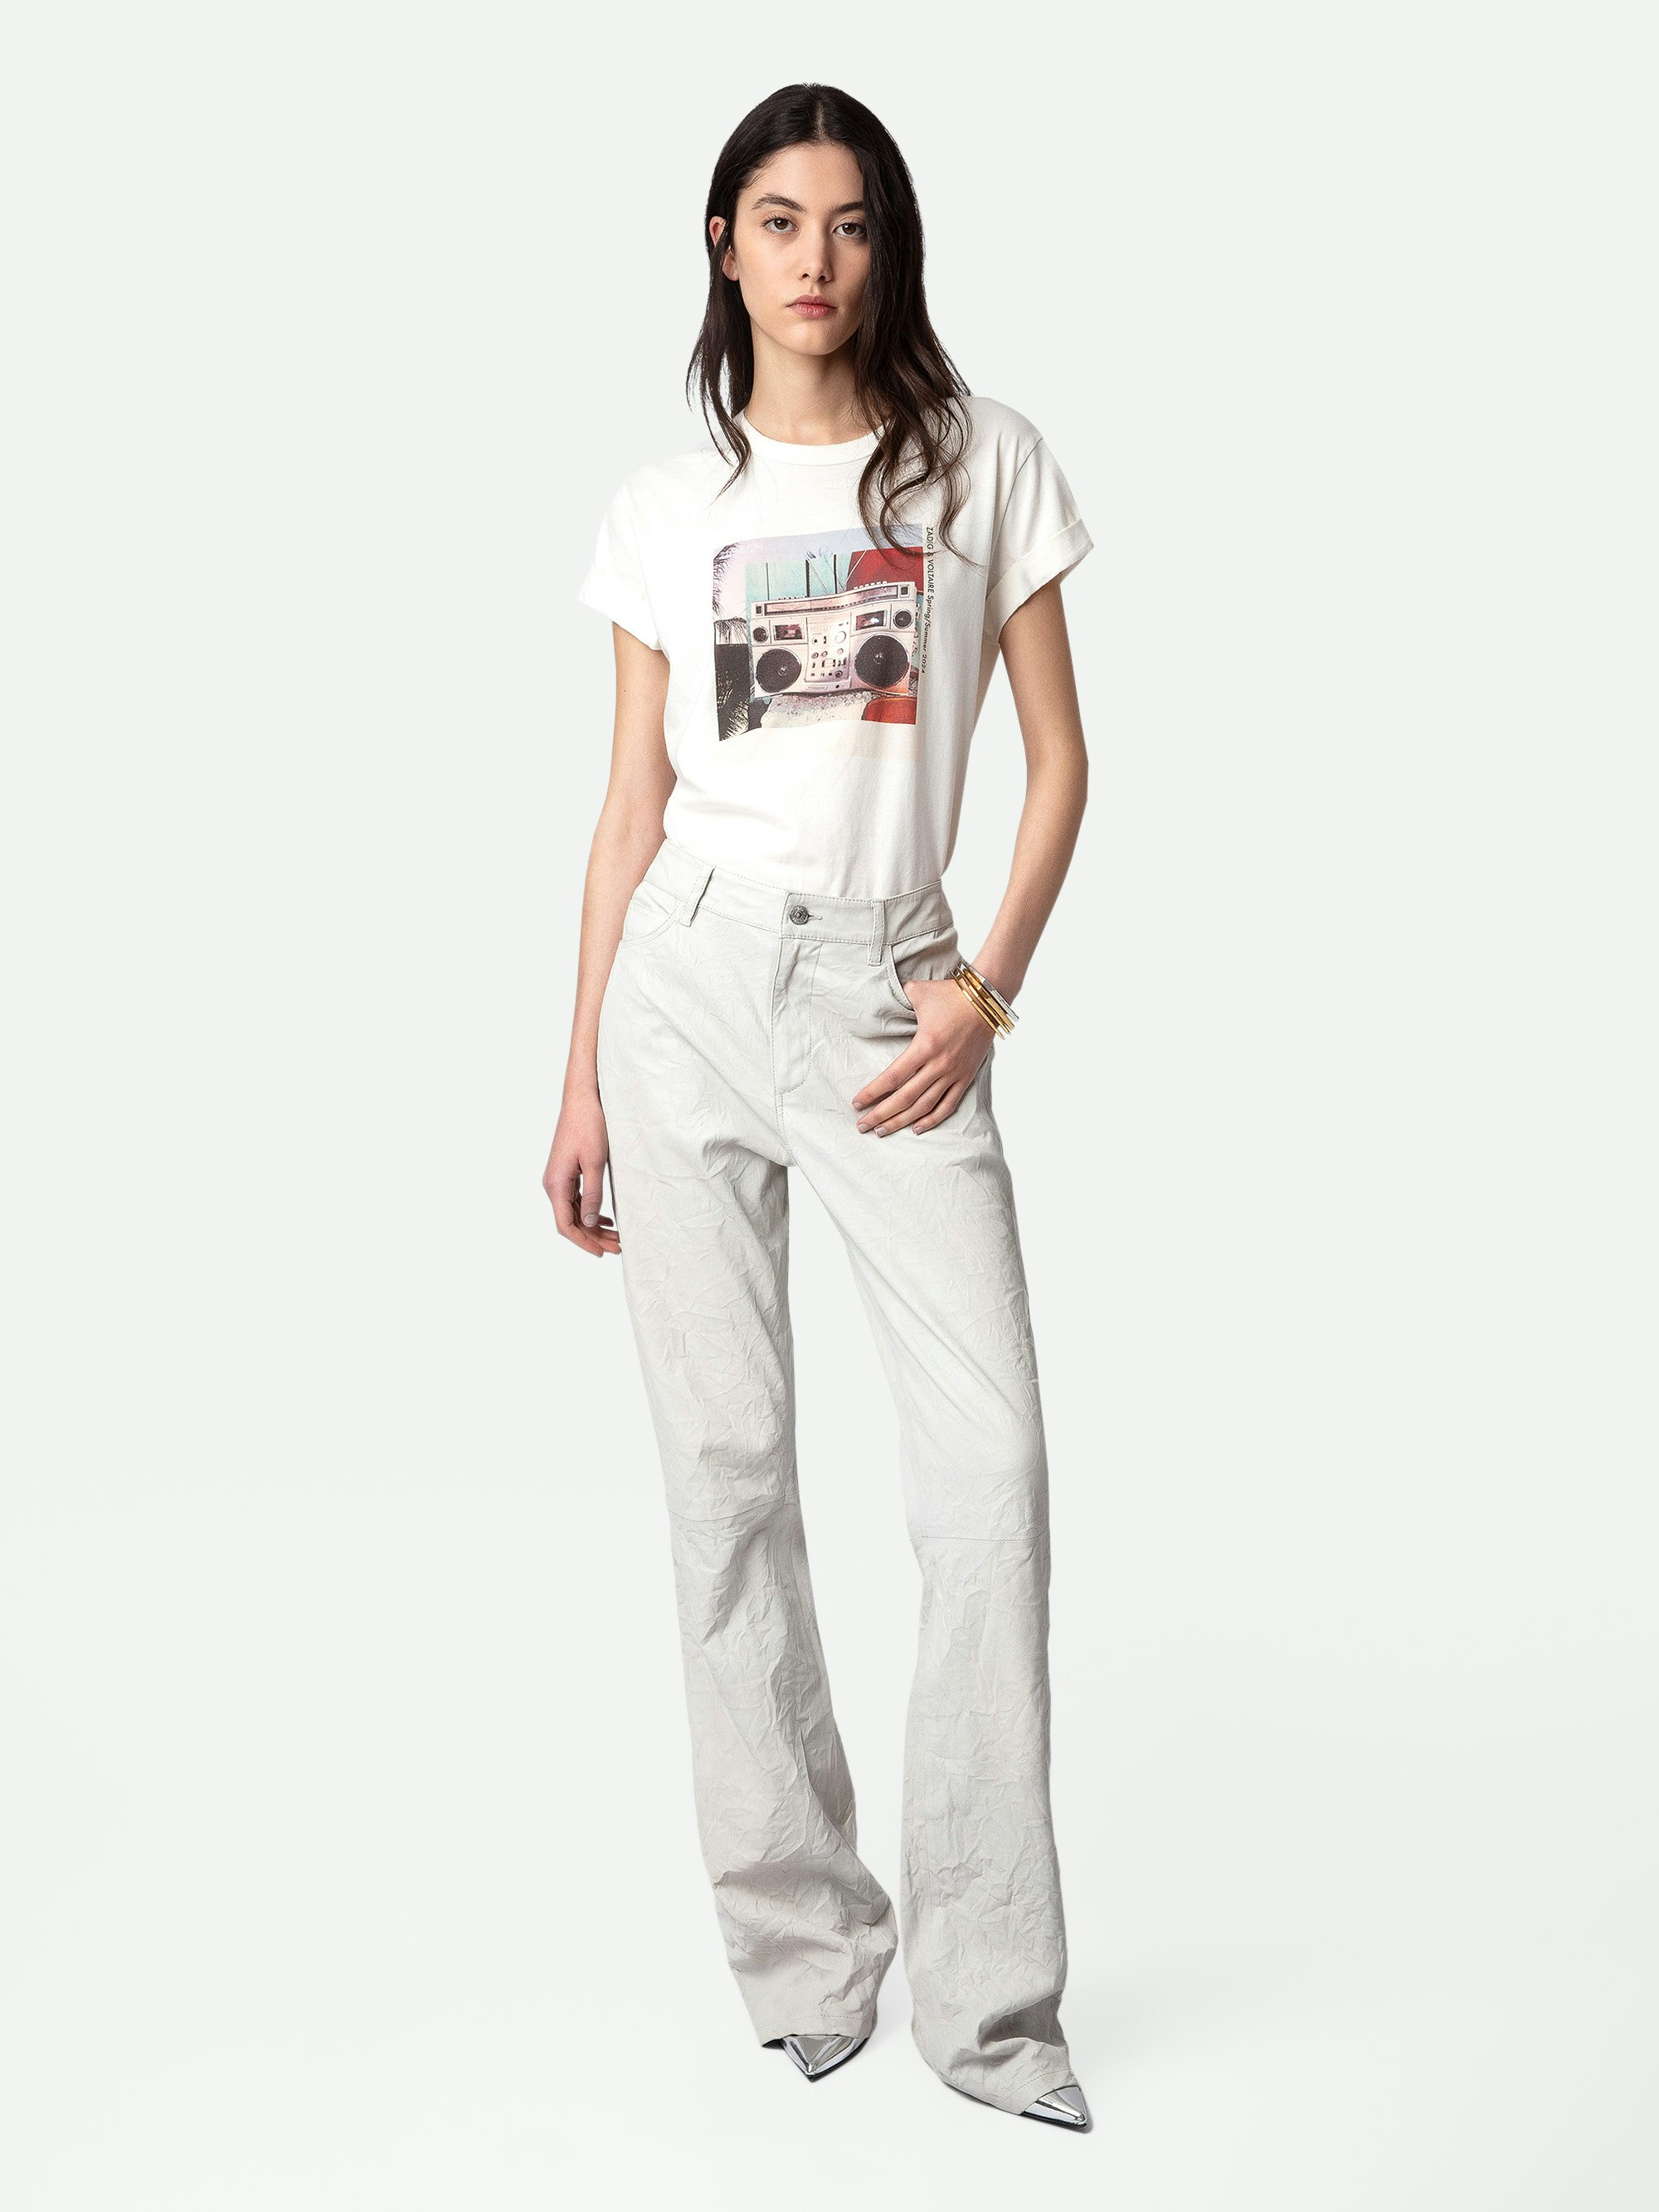 T-Shirt Anya Fotoprint - Weißes Kurzarm-T-Shirt aus Baumwolle mit Ghettoblaster-Fotoprint.